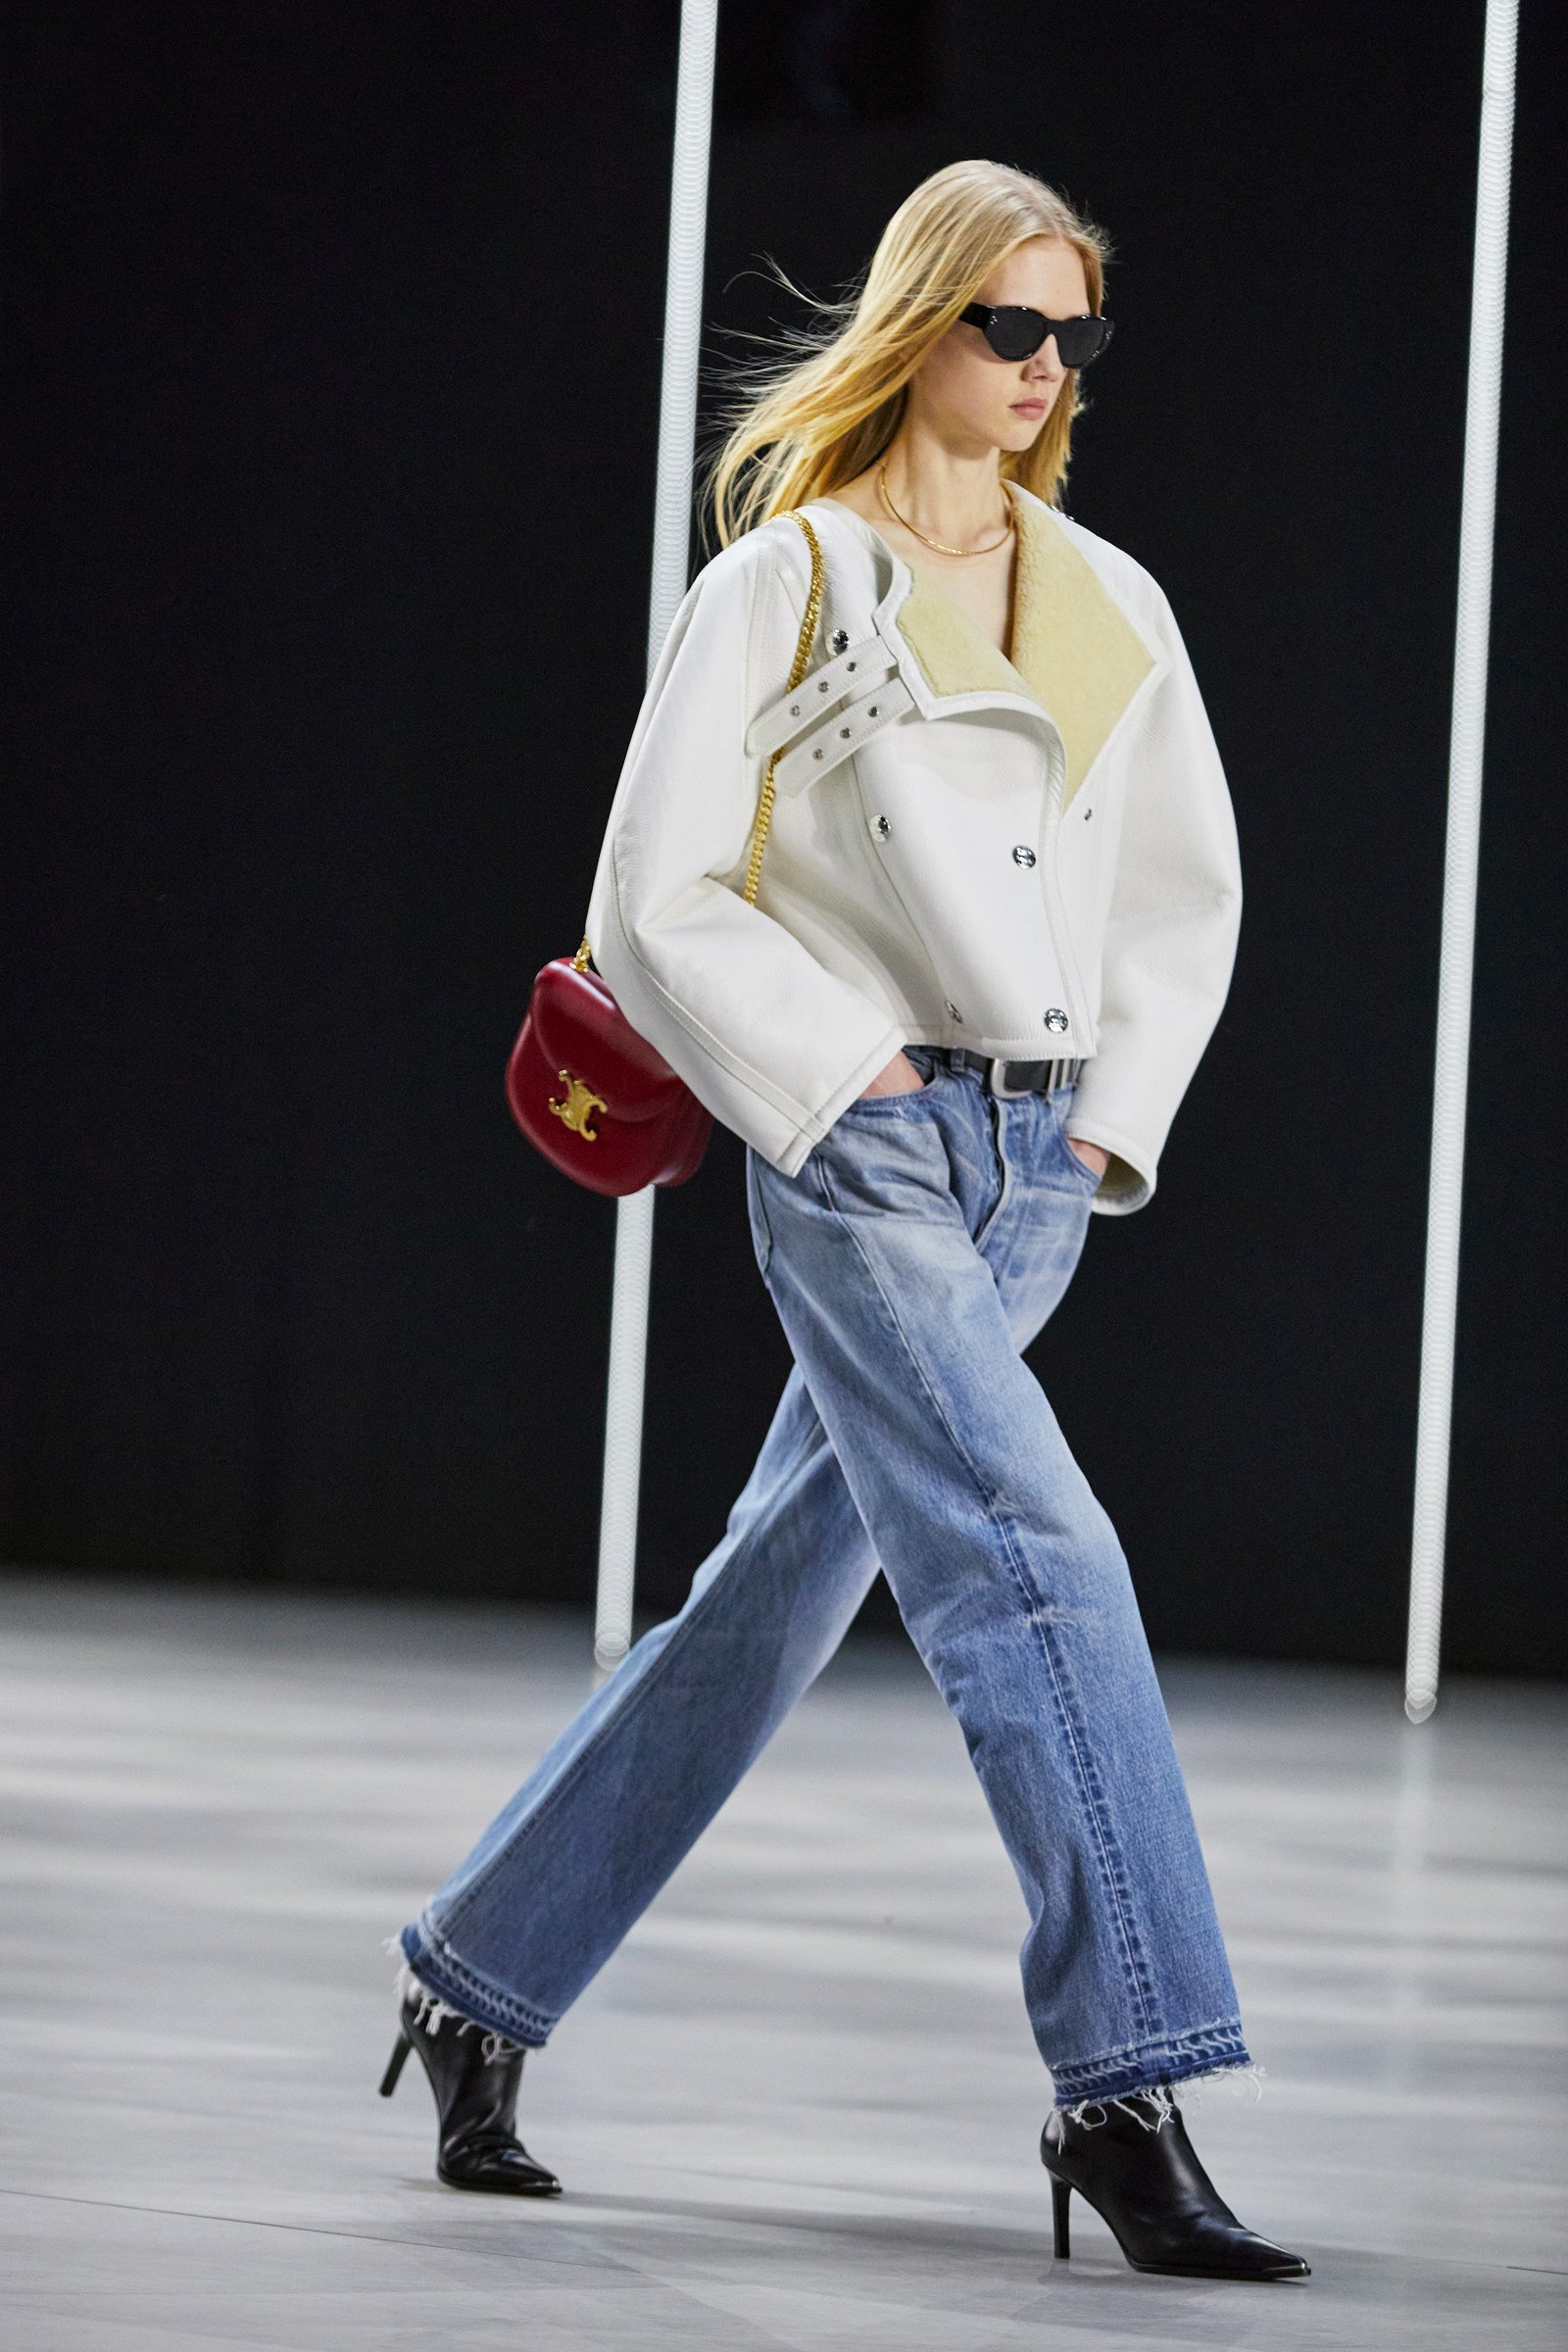 STYLE Edit: Celine's cute, Paris-inspired Teen Chain Besace bag